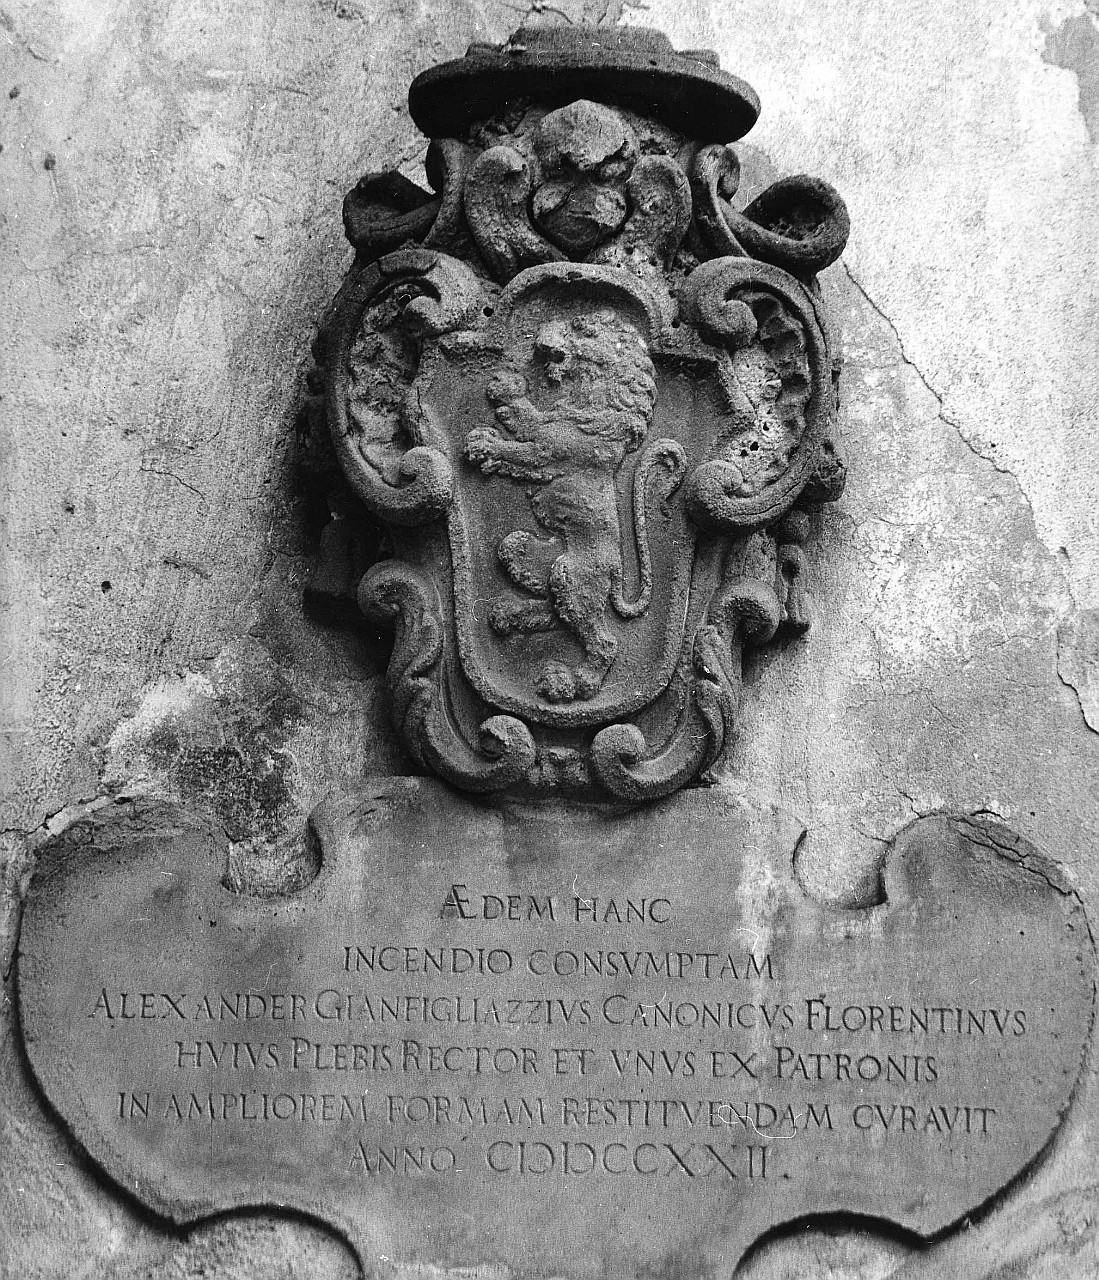 stemma gentilizio della famiglia Gianfigliazzi (scultura) - bottega toscana (primo quarto sec. XVIII)